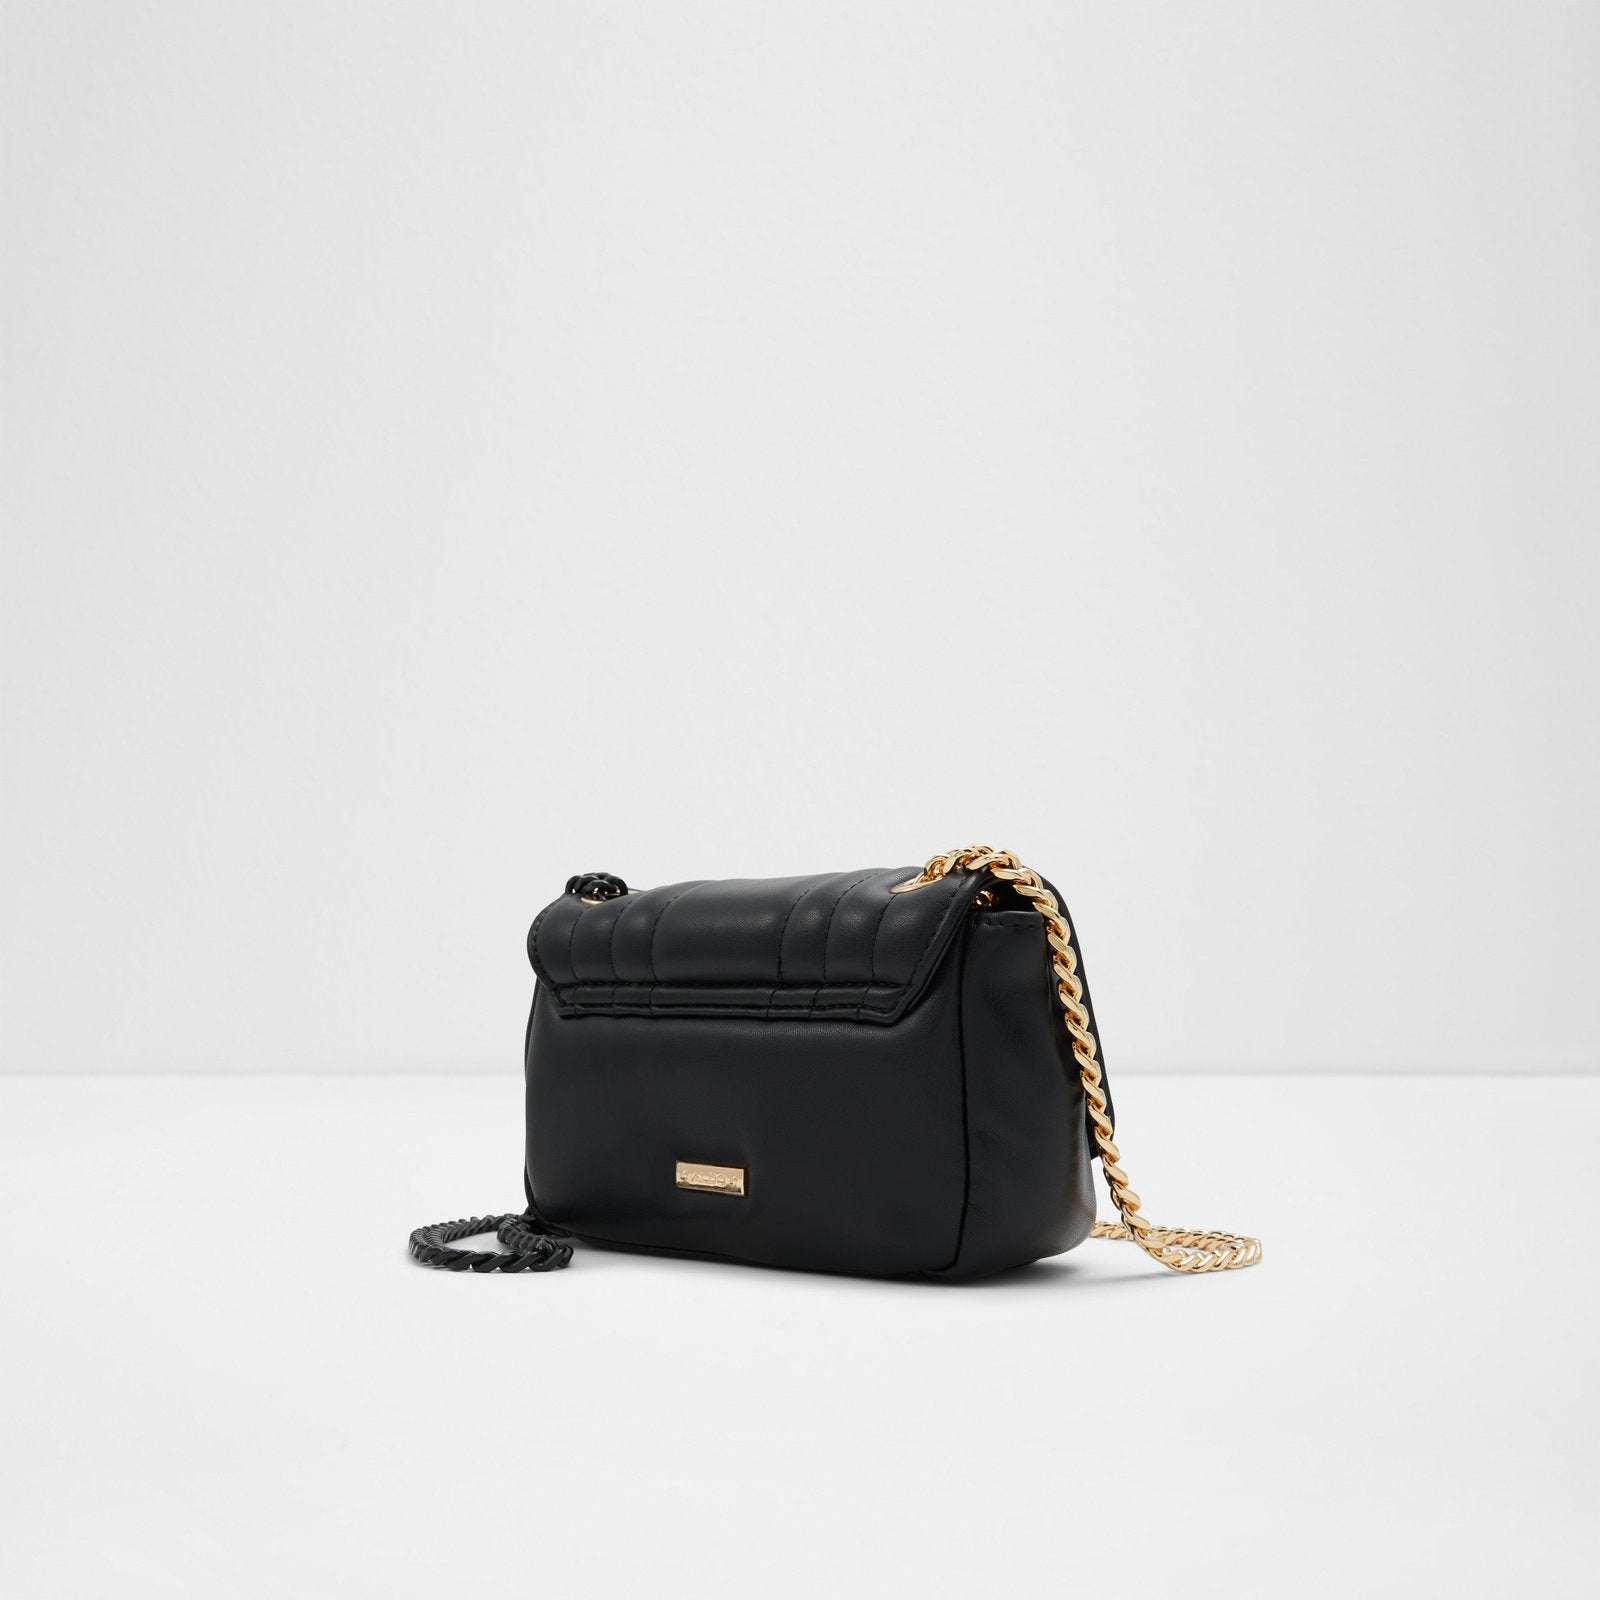 Lyndzi Handbags Black Color by Aldo